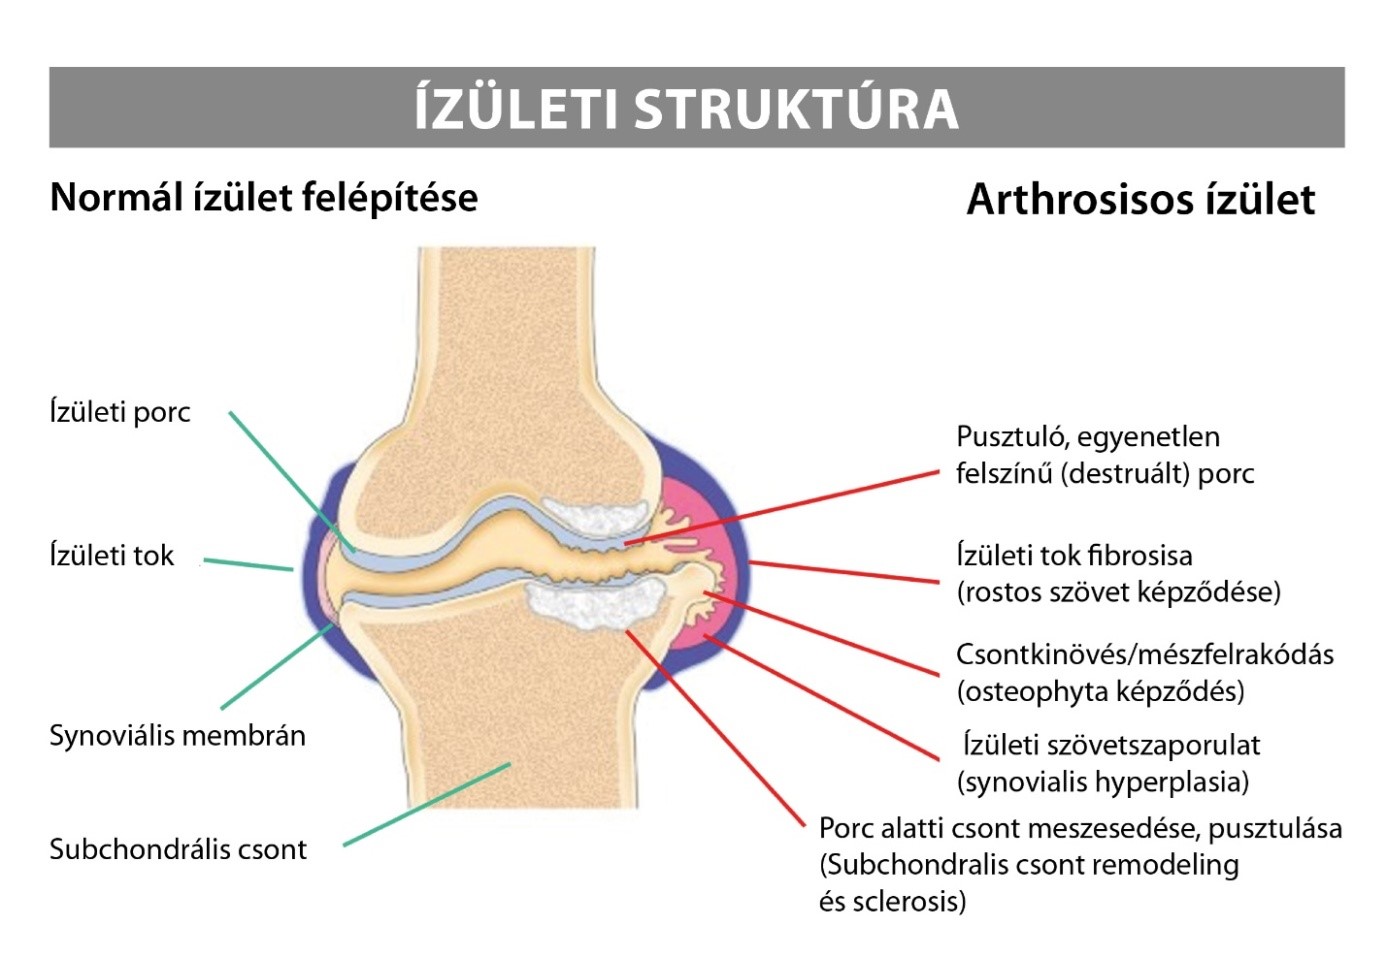 mi az artrózis és hogyan kell kezelni